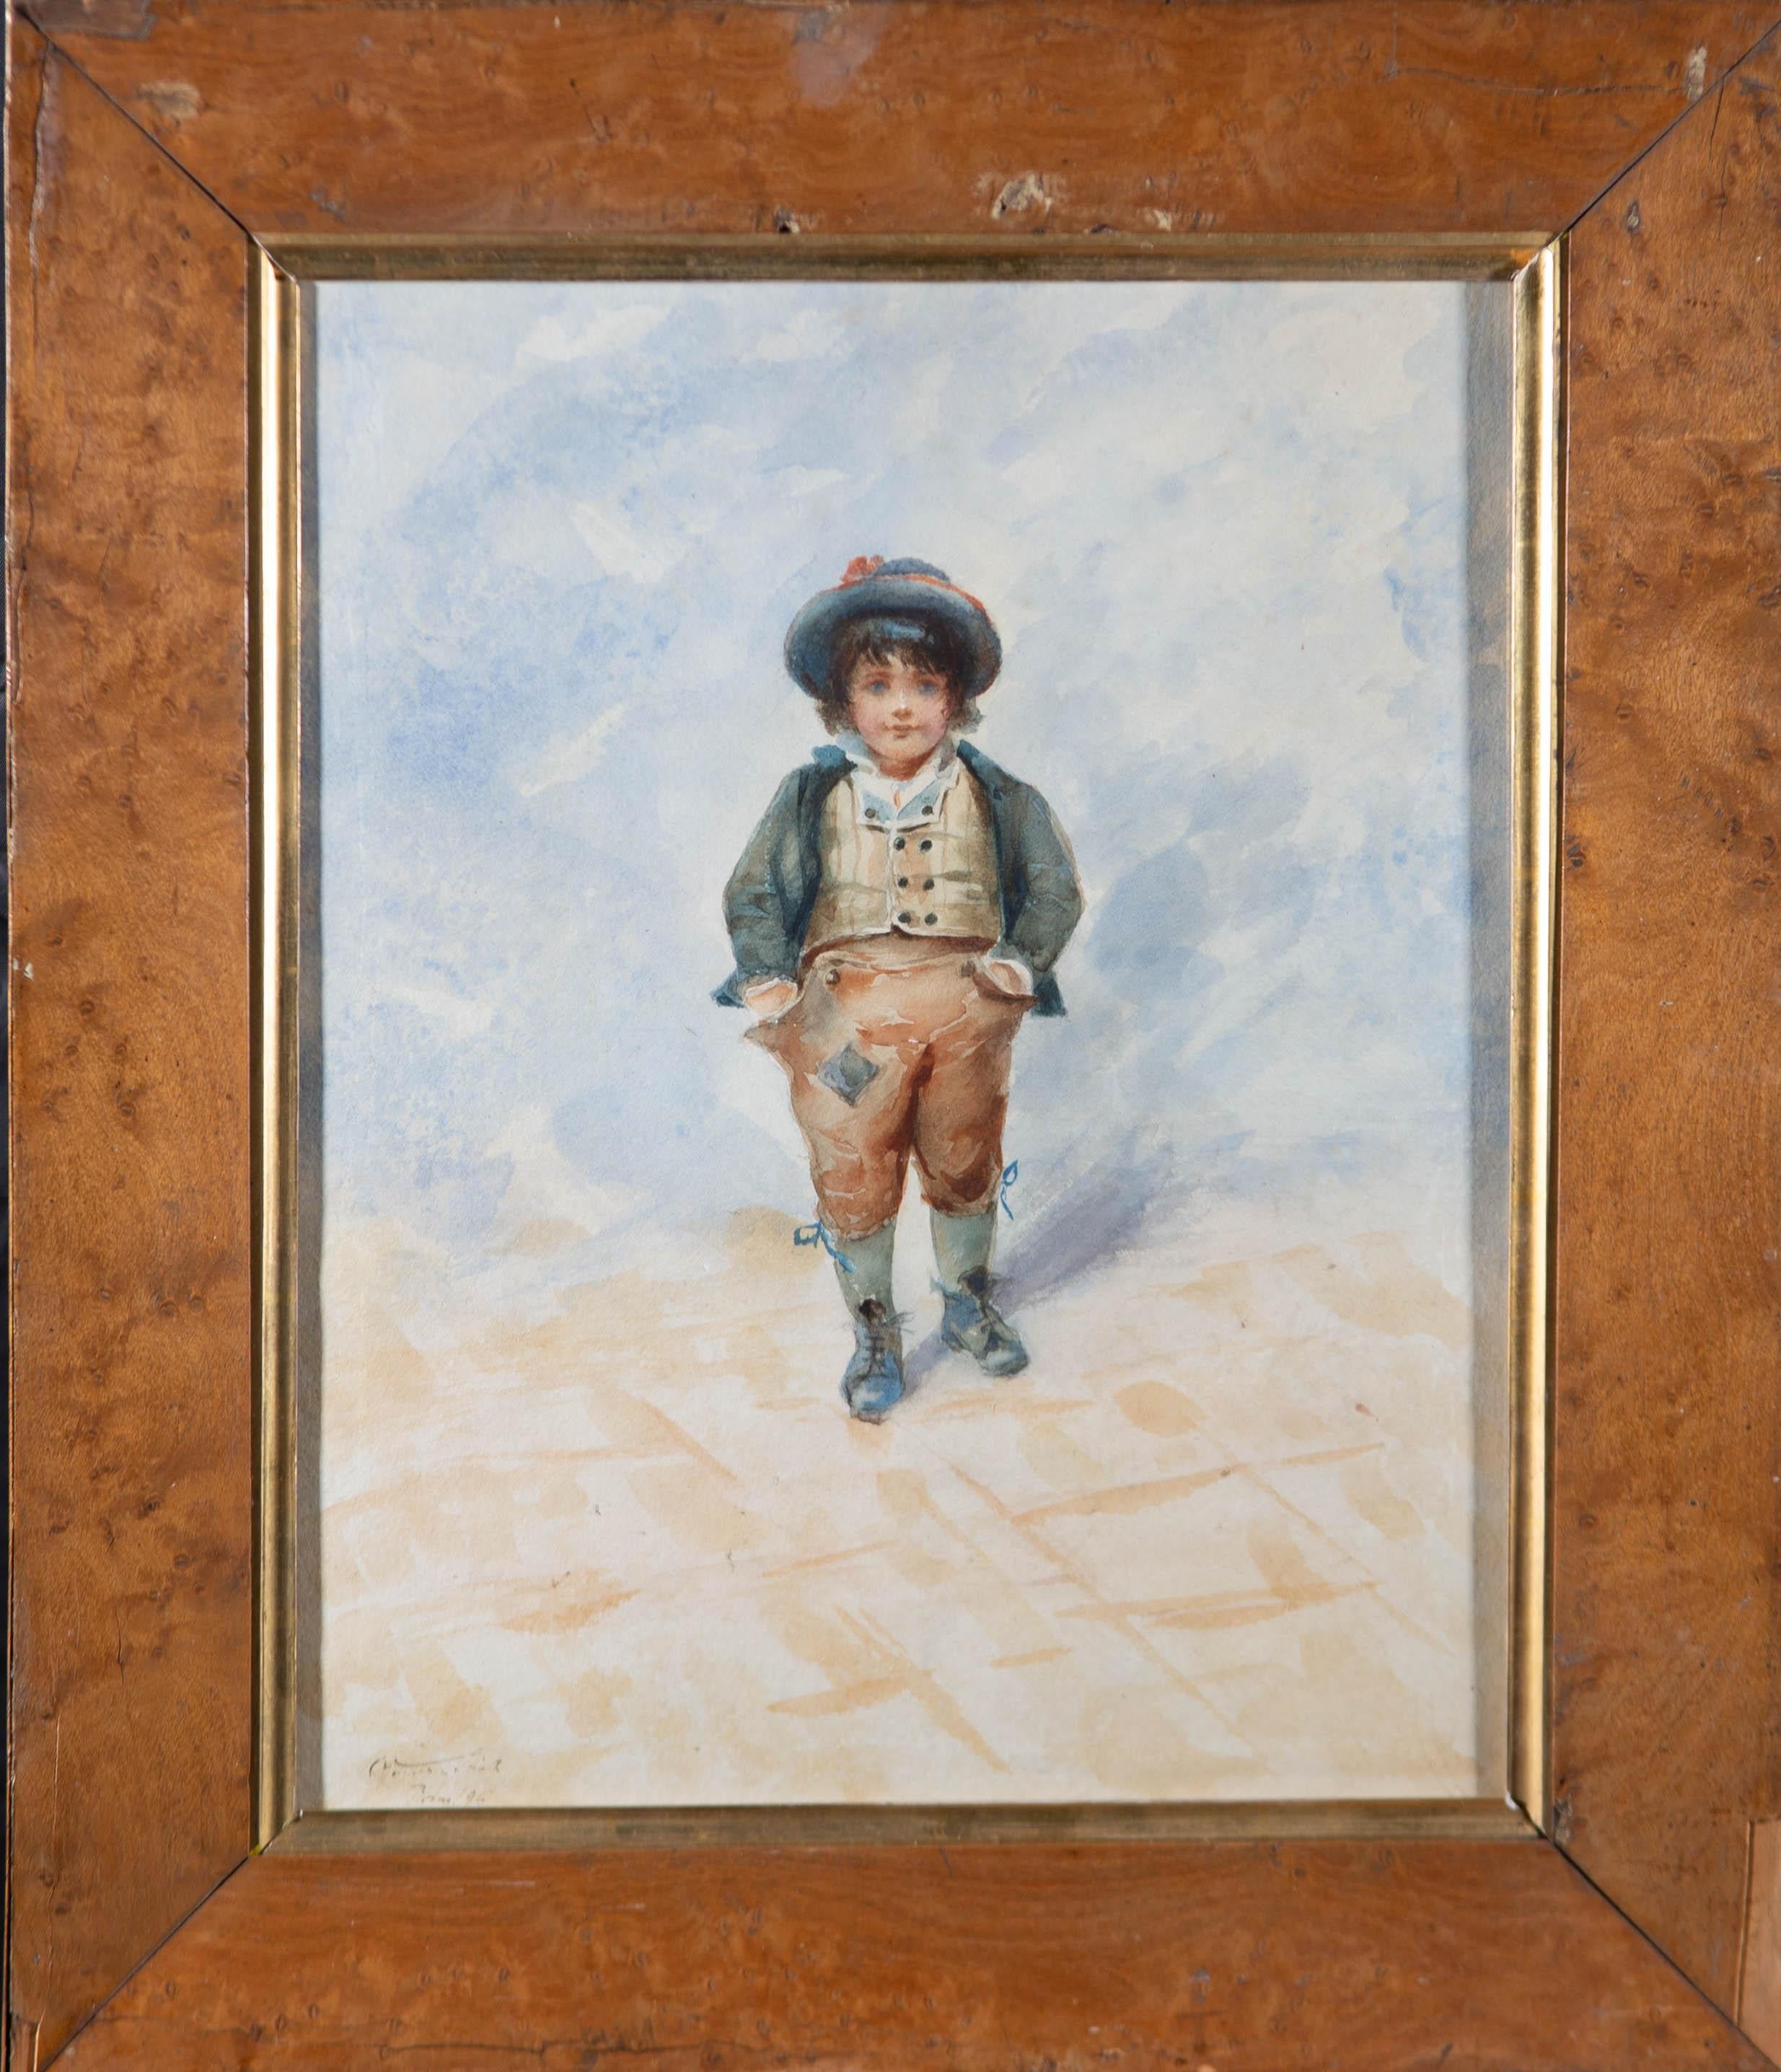 Portrait de caractère à l'aquarelle d'un jeune garçon portant un chapeau bleu et des pantalons bruns.

L'artiste a signé faiblement et daté dans le coin inférieur gauche. Le tableau est présenté dans un beau cadre en érable piqué, avec une fenêtre